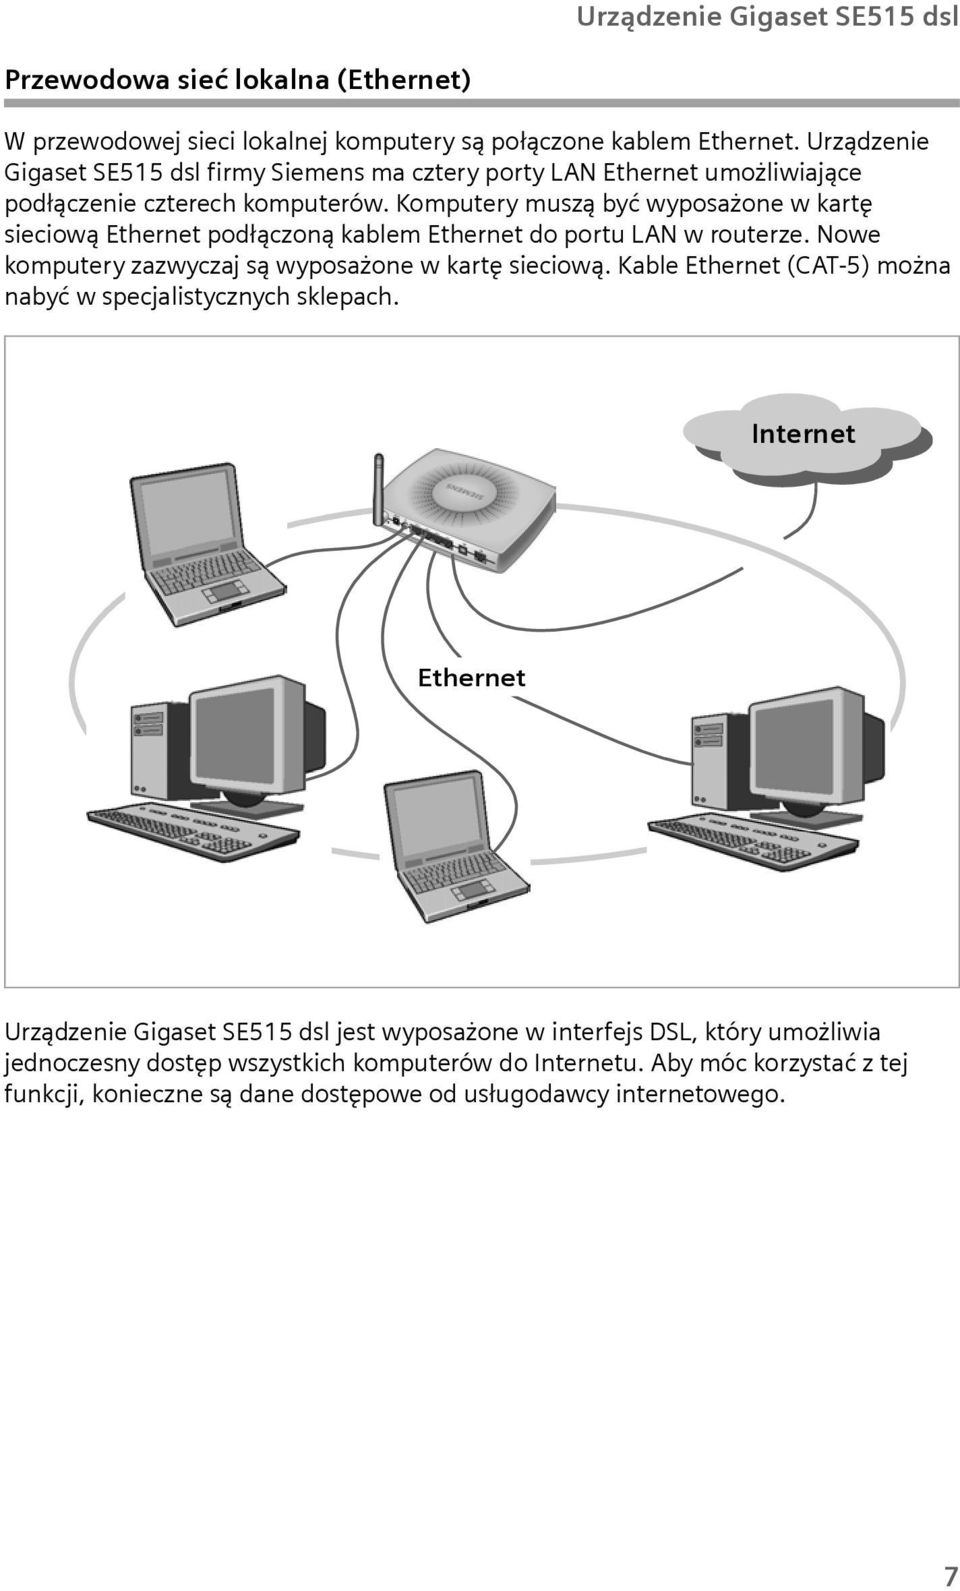 Komputery muszą być wyposażone w kartę sieciową Ethernet podłączoną kablem Ethernet do portu LAN w routerze. Nowe komputery zazwyczaj są wyposażone w kartę sieciową.